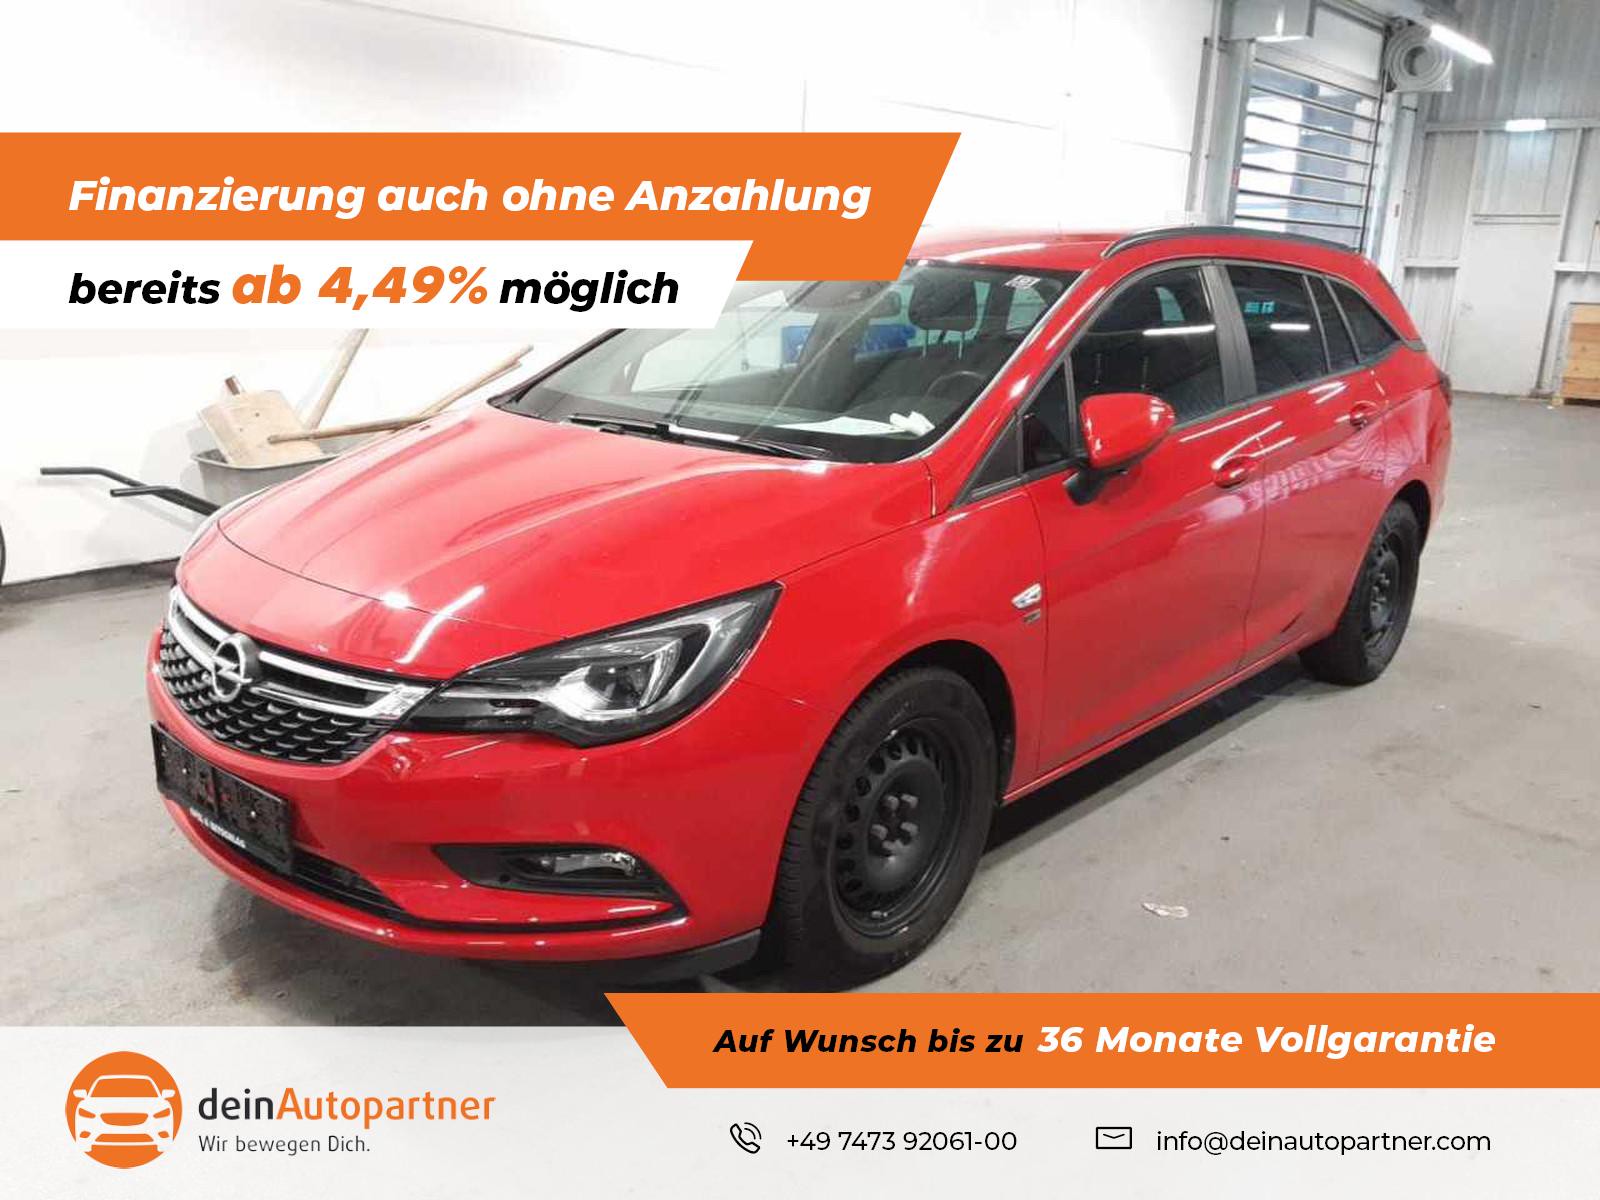 Opel Astra Sports Tourer gebraucht kaufen in Mössingen Preis 13490